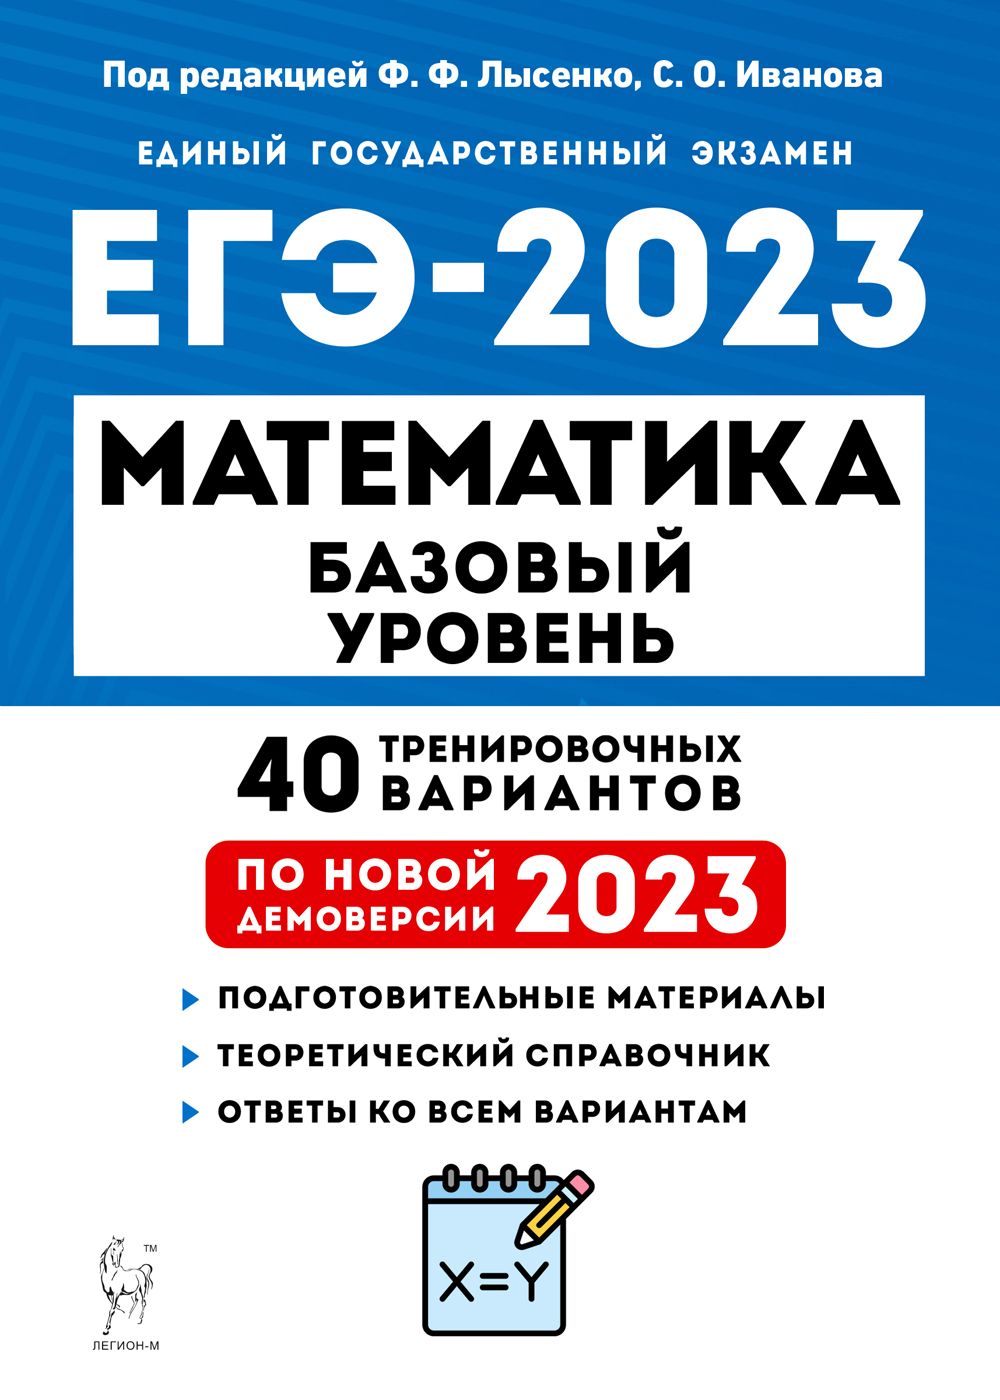 Математика. Подготовка к ЕГЭ-2023. Базовый уровень. 40 тренировочных вариантов по демоверсии 2023 года